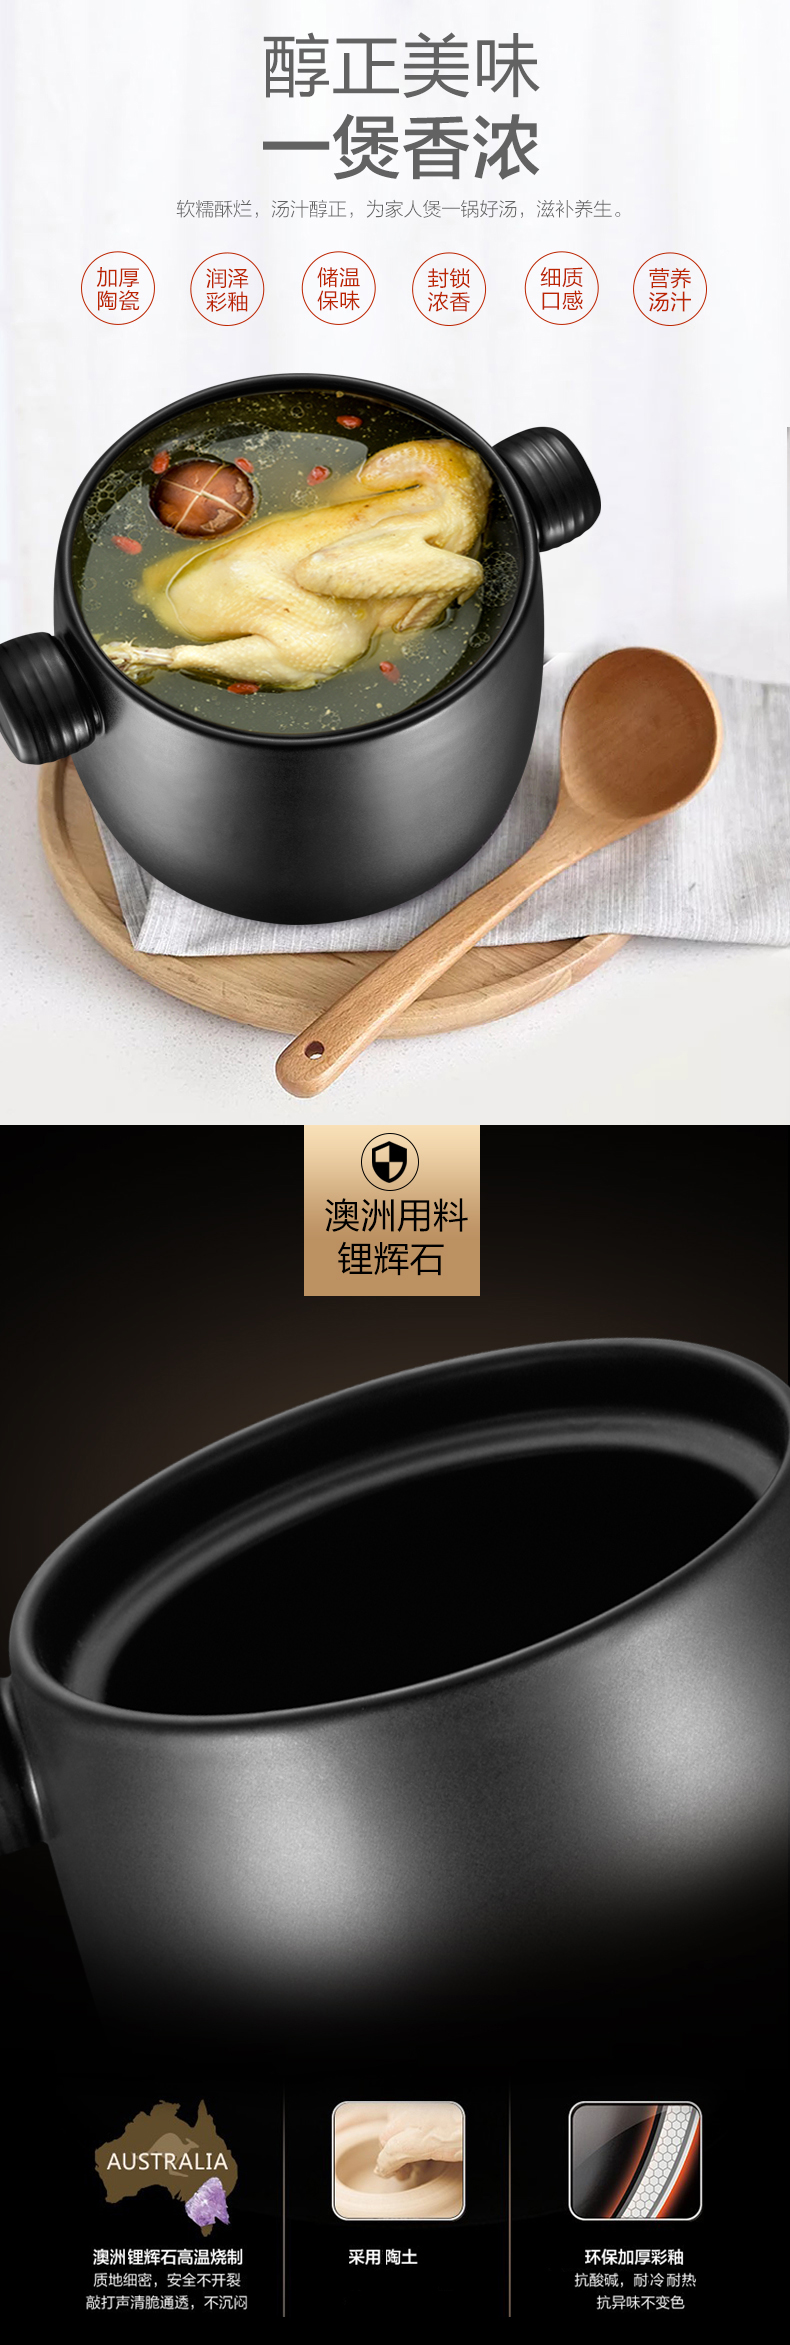 爱仕达陶瓷煲耐高温不外溢养生煲汤煲陶瓷砂锅煲聚味II系列陶瓷煲3.5L